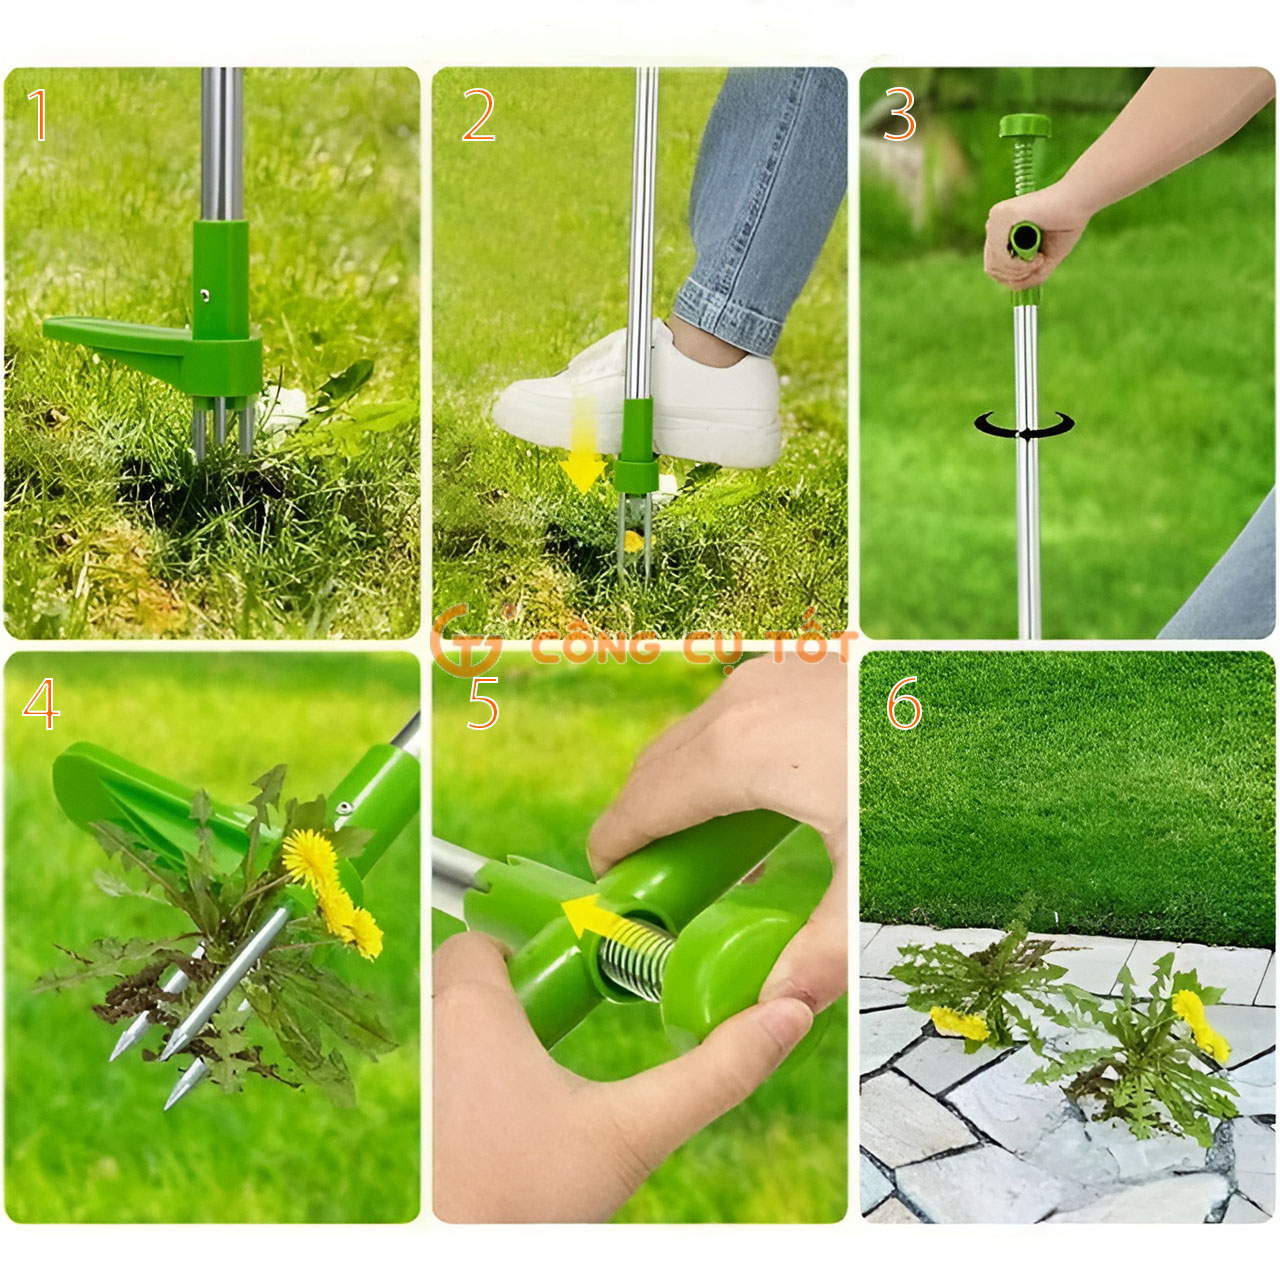 Cách sử dụng xiên xoáy nhổ cỏ